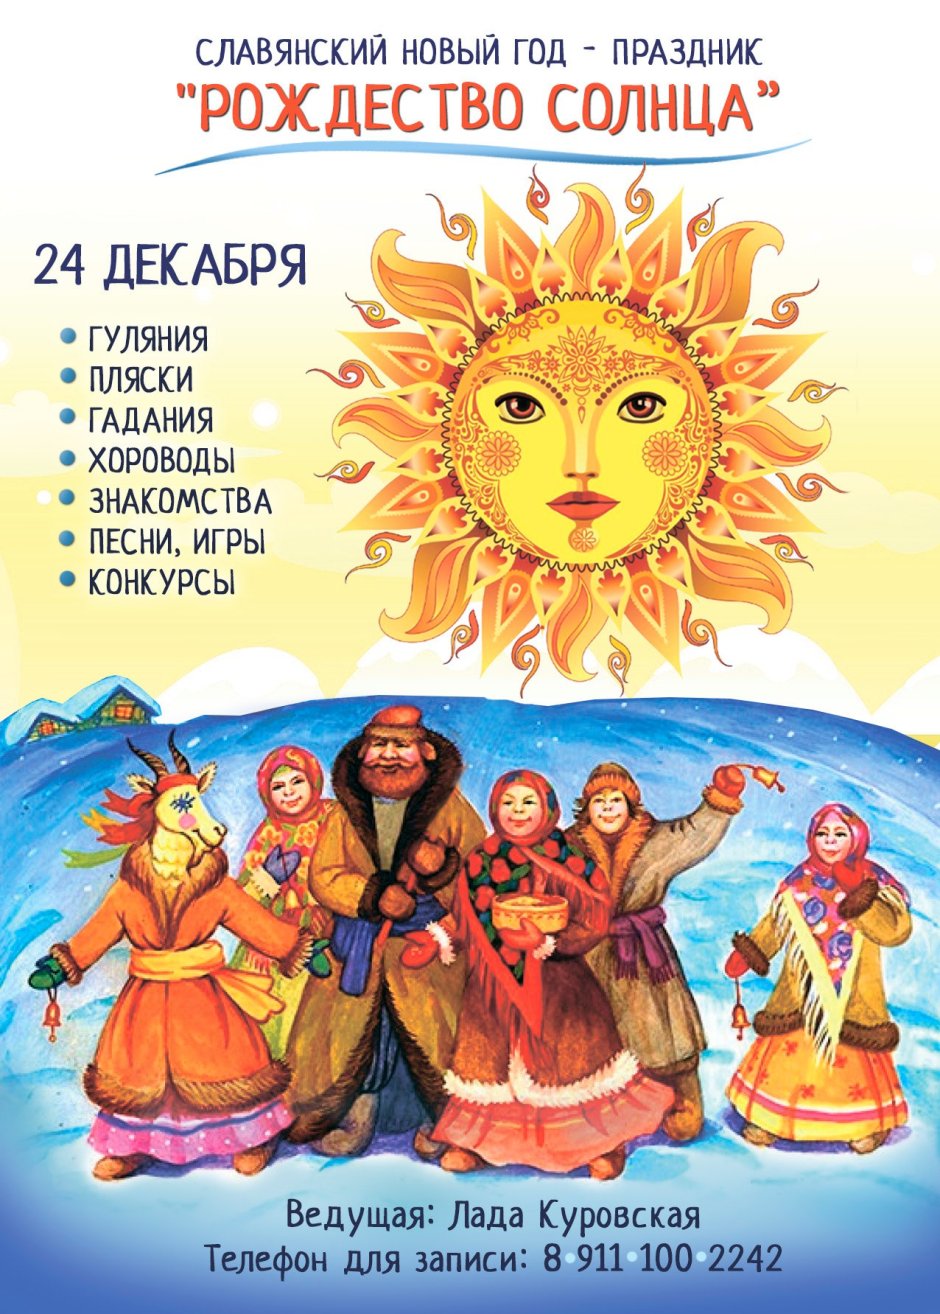 29 Сентября народный календарь